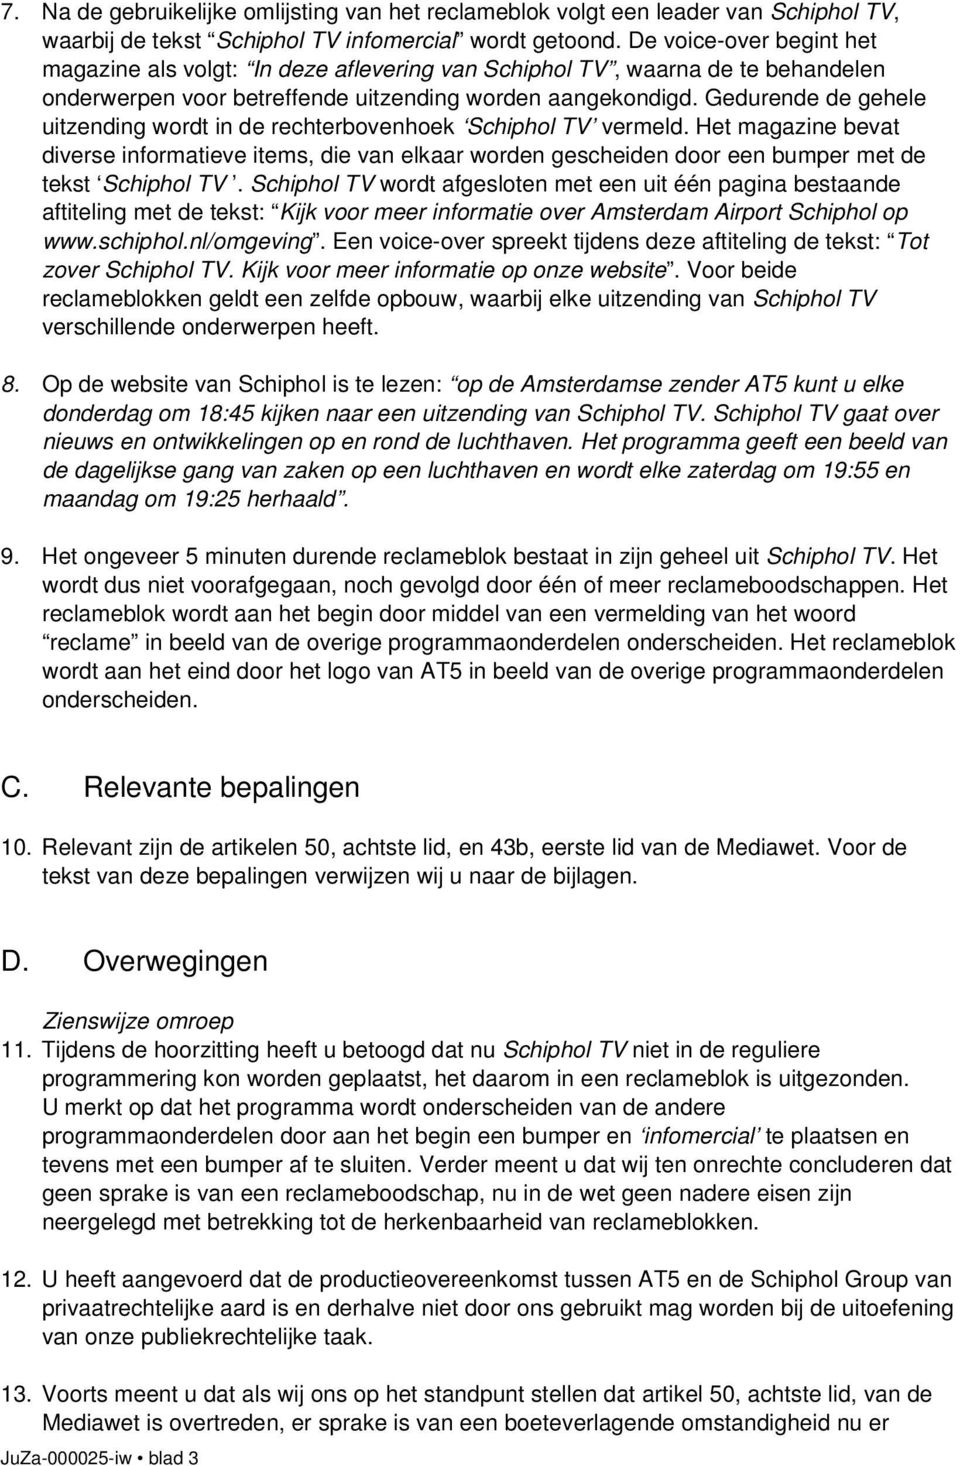 Gedurende de gehele uitzending wordt in de rechterbovenhoek Schiphol TV vermeld.